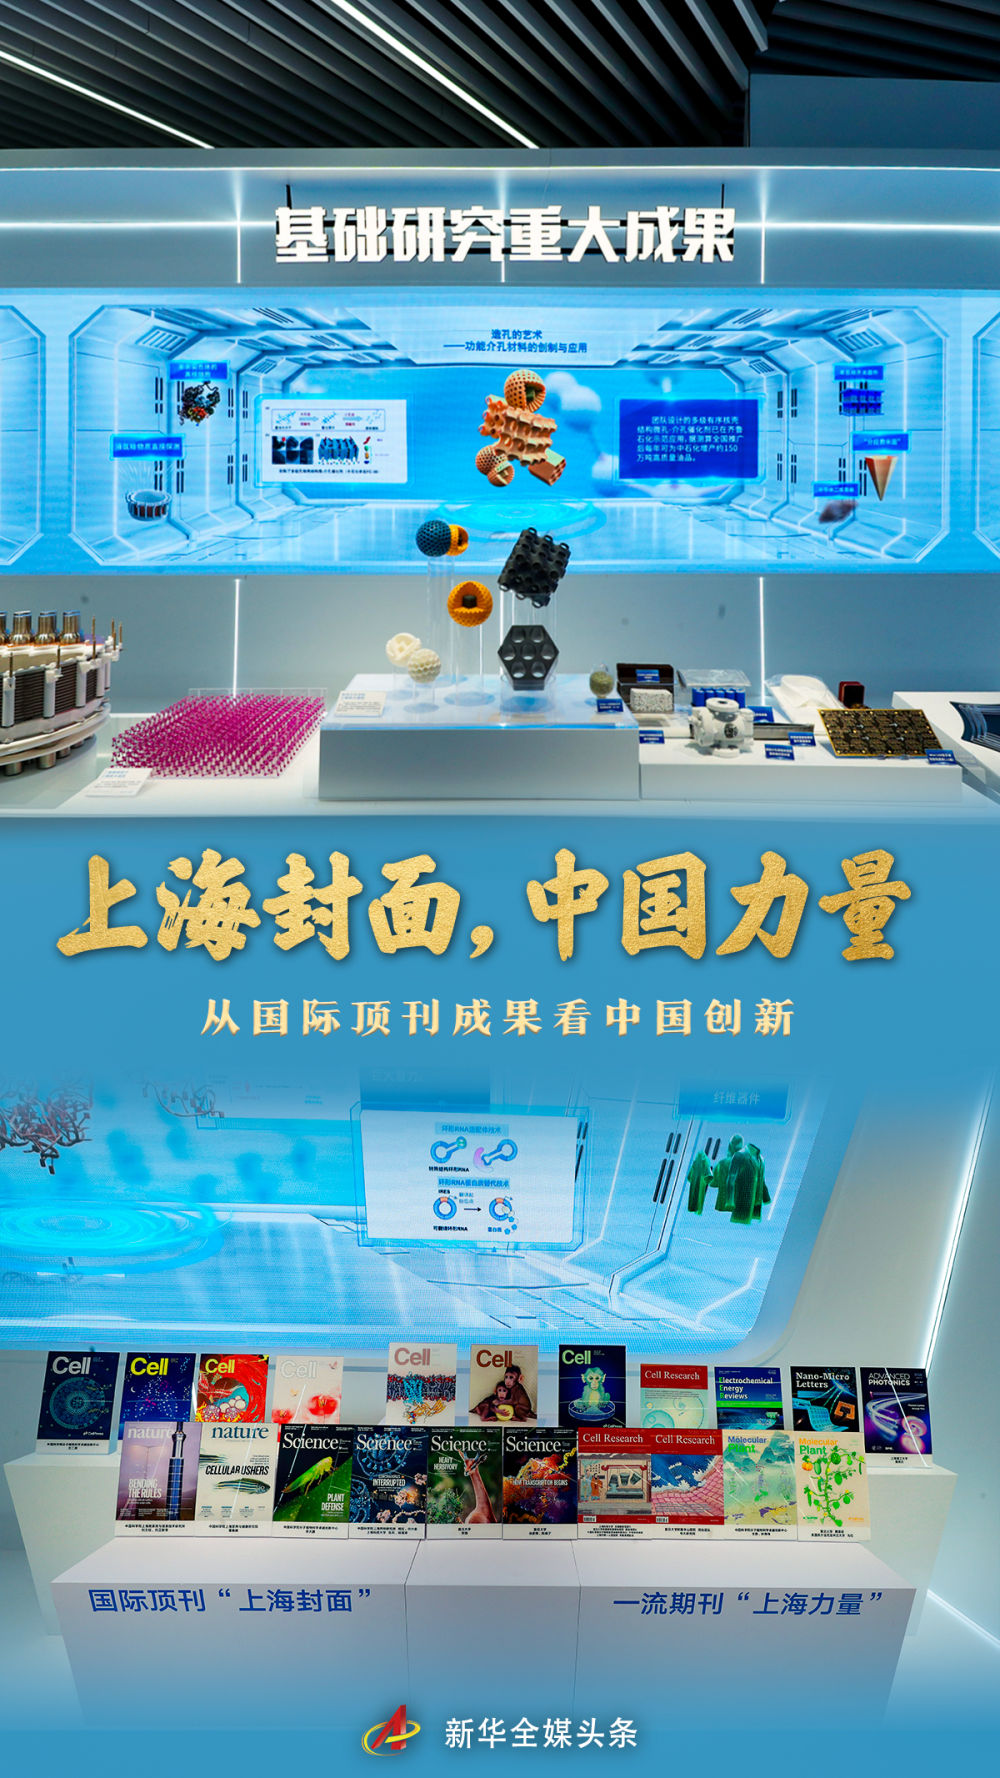 上海封面，中国力量——从国际顶刊成果看中国创新